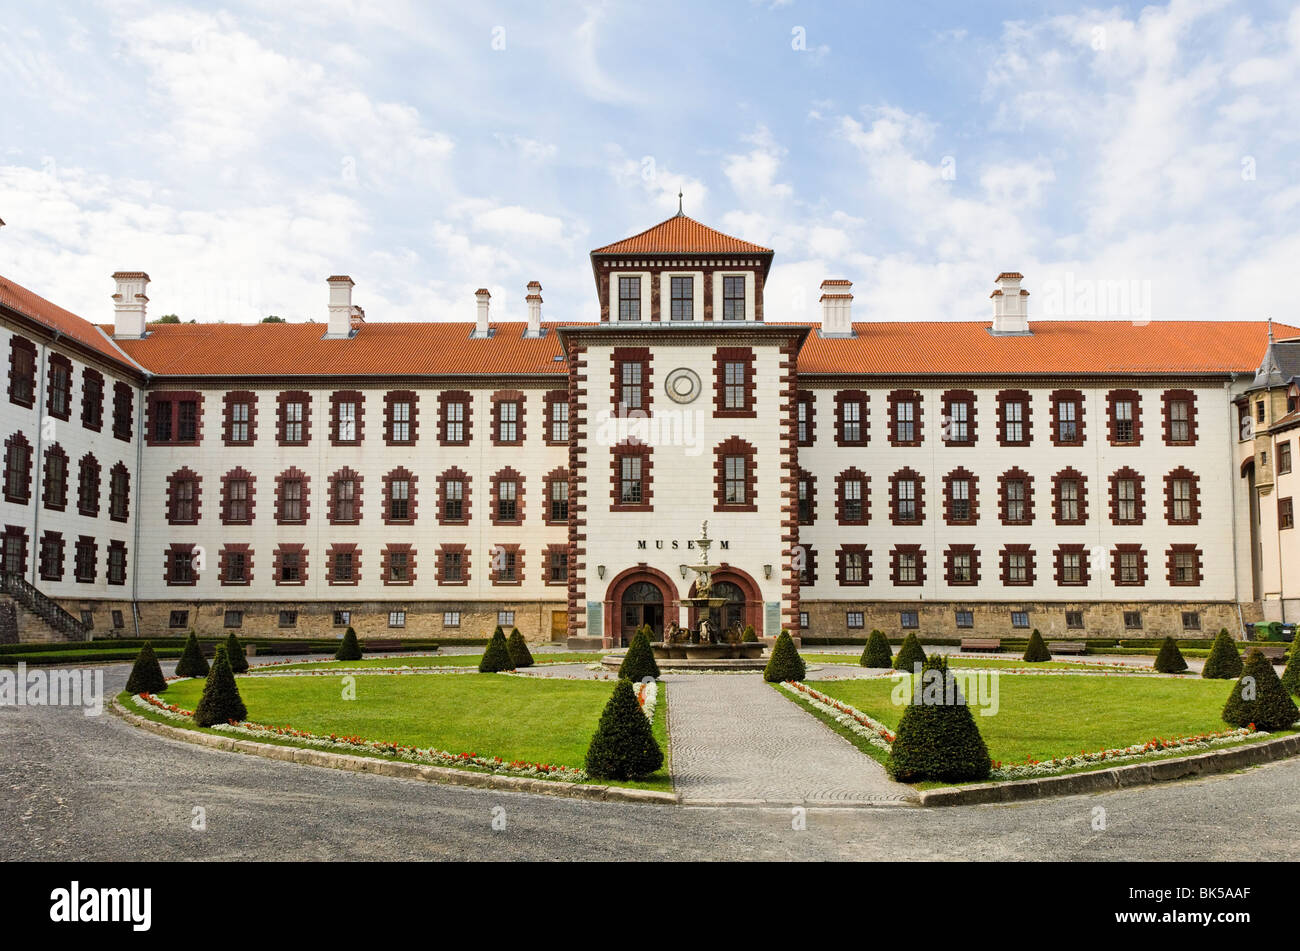 Elisabethenburg Palace in der historischen Stadt Meiningen Stockfoto